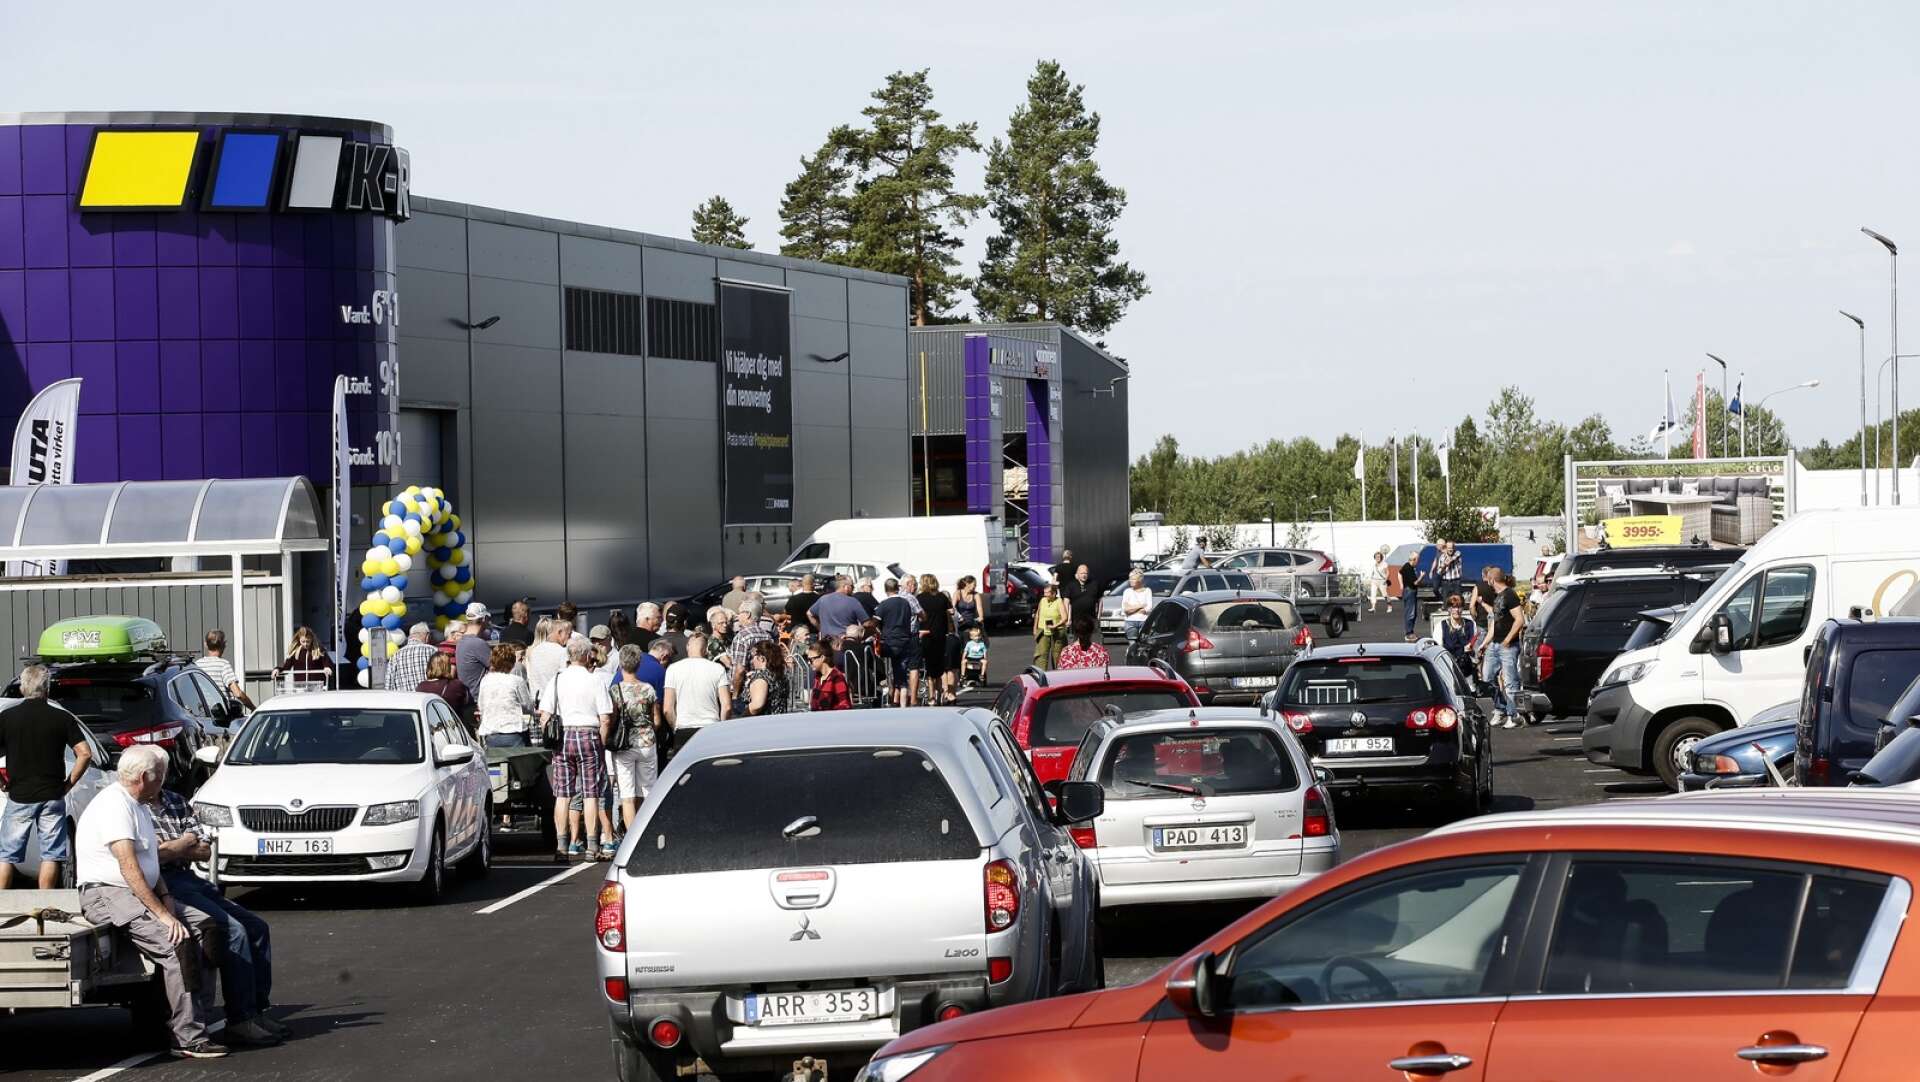 Det var långa köer när K-Rauta invigde varhuset på Bergvik i juli 2018.